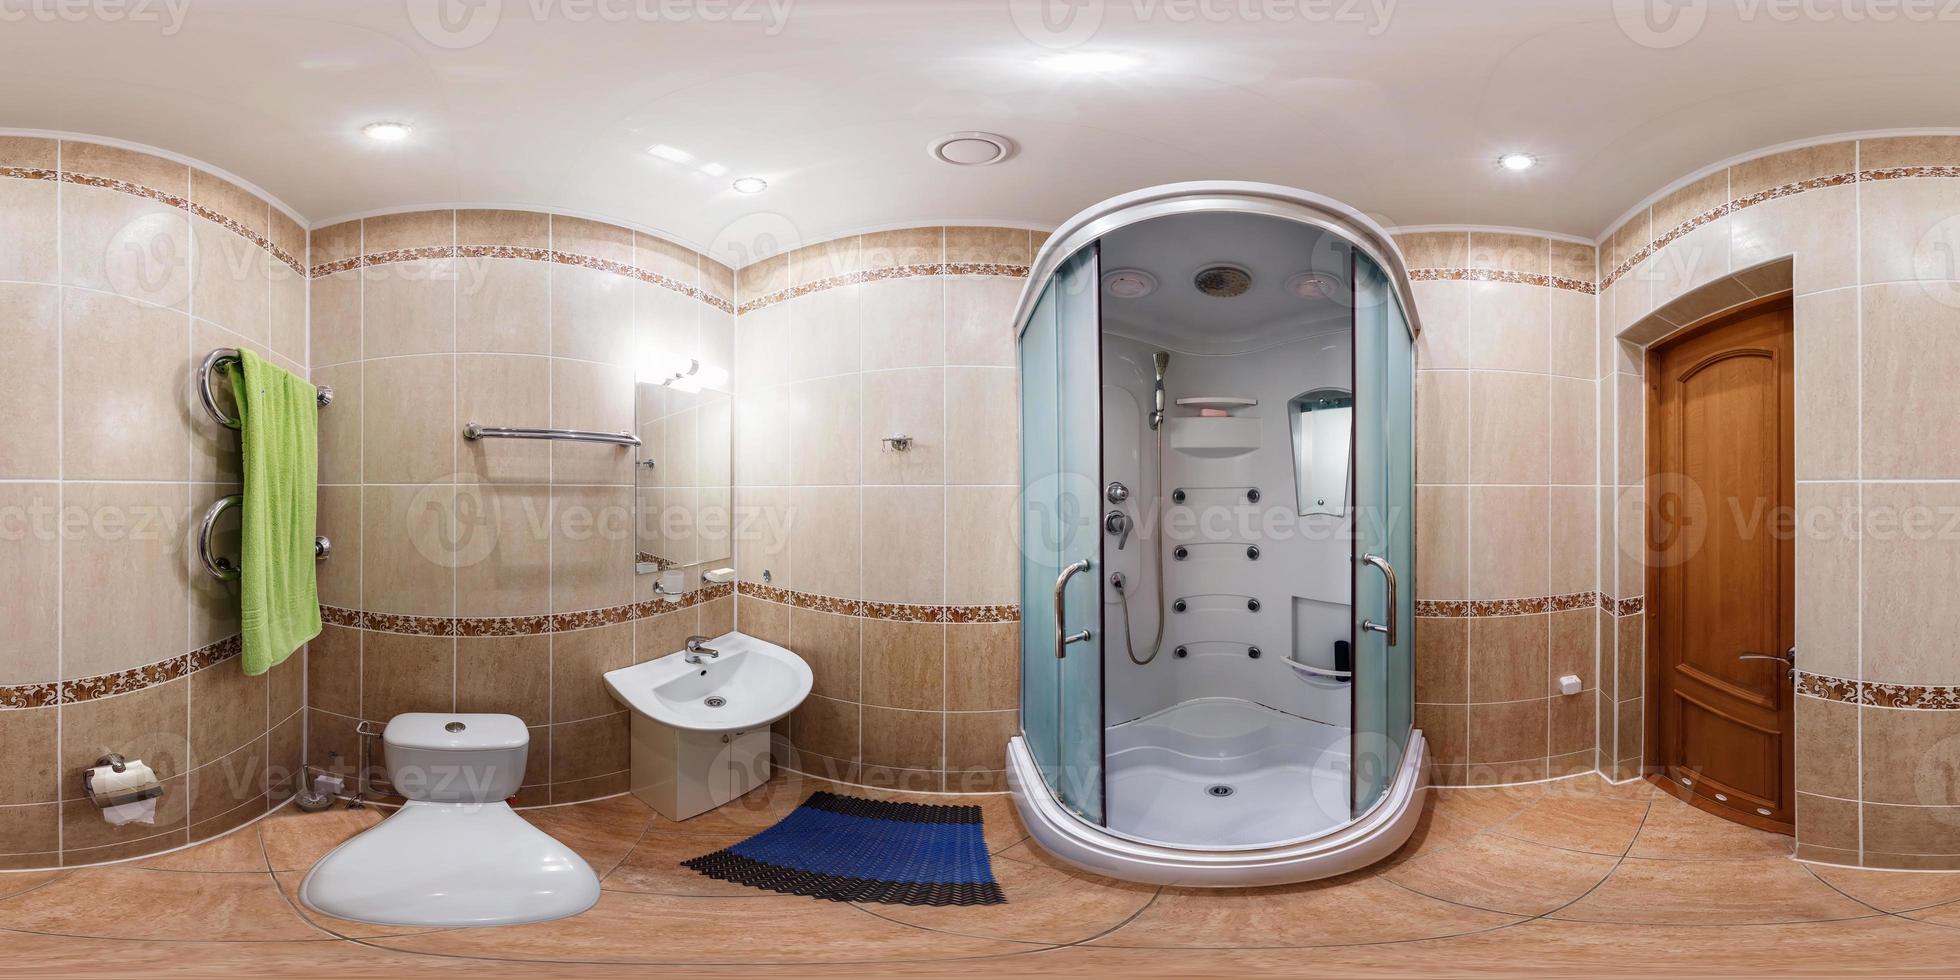 sömlös 360 panorama i interiör av badrum av billig hotell, platt eller lägenheter med toalett, tvättställ och dusch i likriktad utsprång med zenit och nadir. vr ar innehåll foto